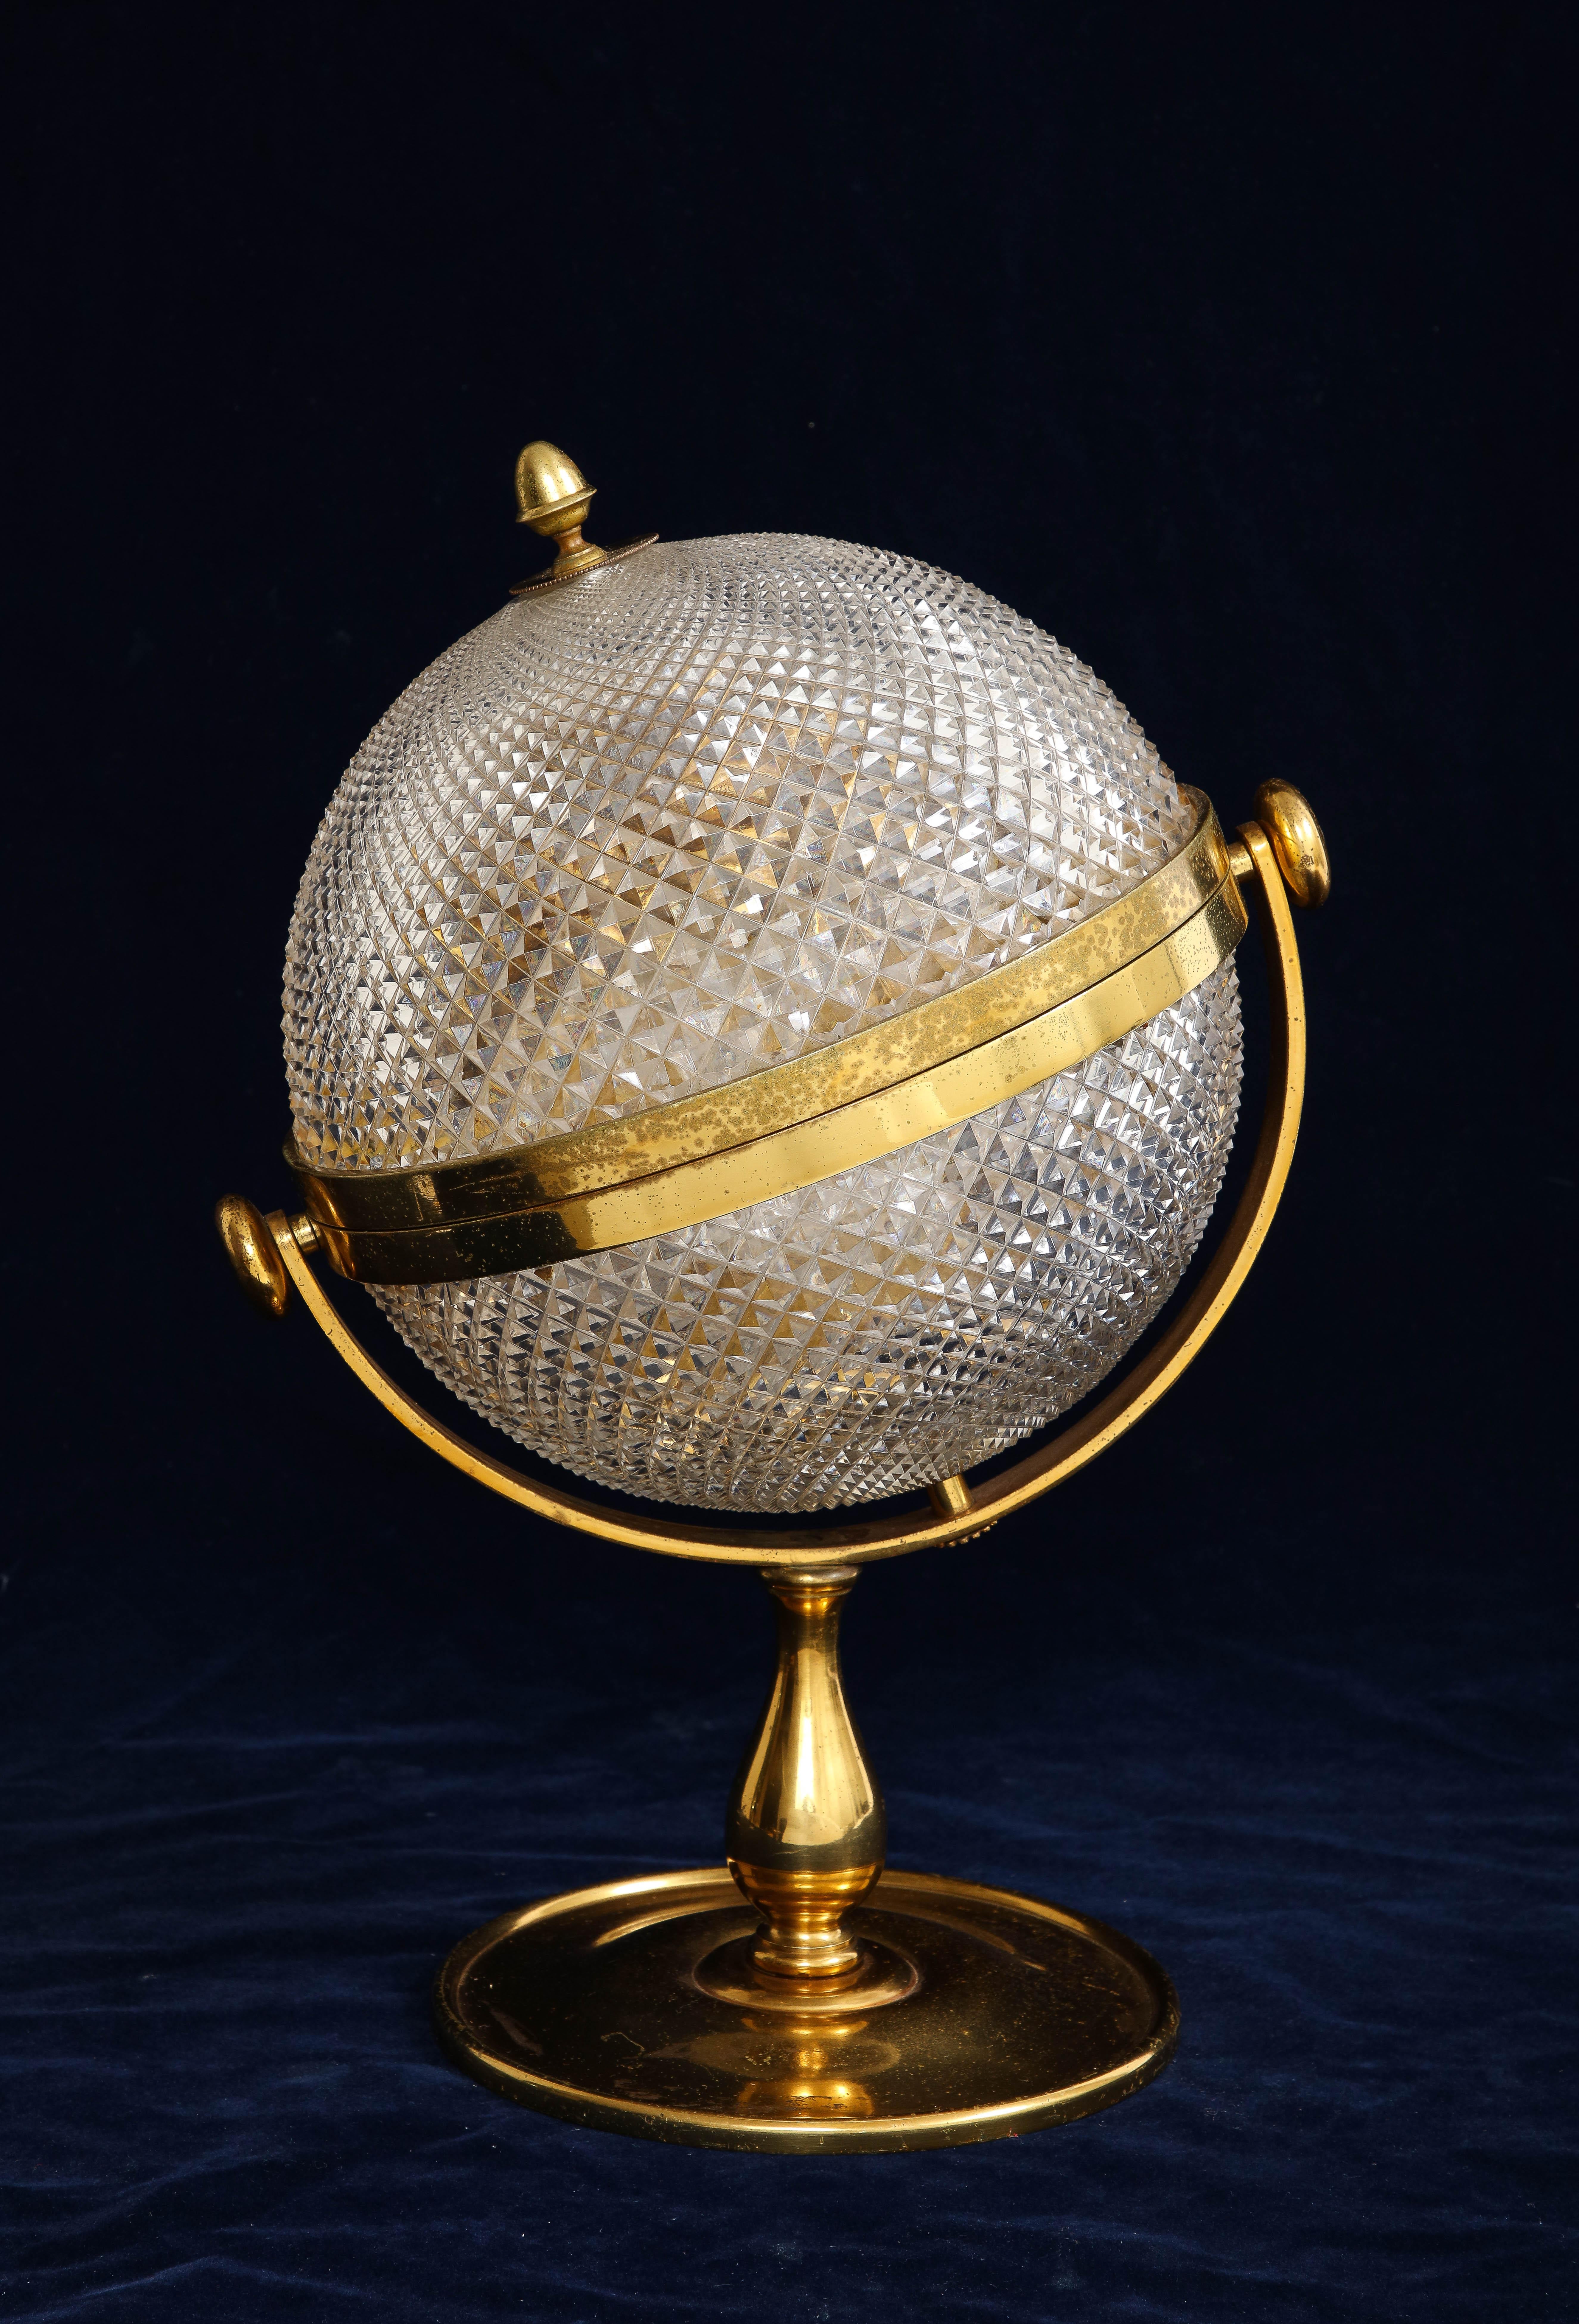 Un inhabituel service à liqueur Tantalus de style Globe monté en bronze doré, datant du 19e siècle. Le sommet rond du globe qui repose sur une base allongée en bronze doré n'est pas courant à trouver. Le plateau en cristal est monté dans un coffret